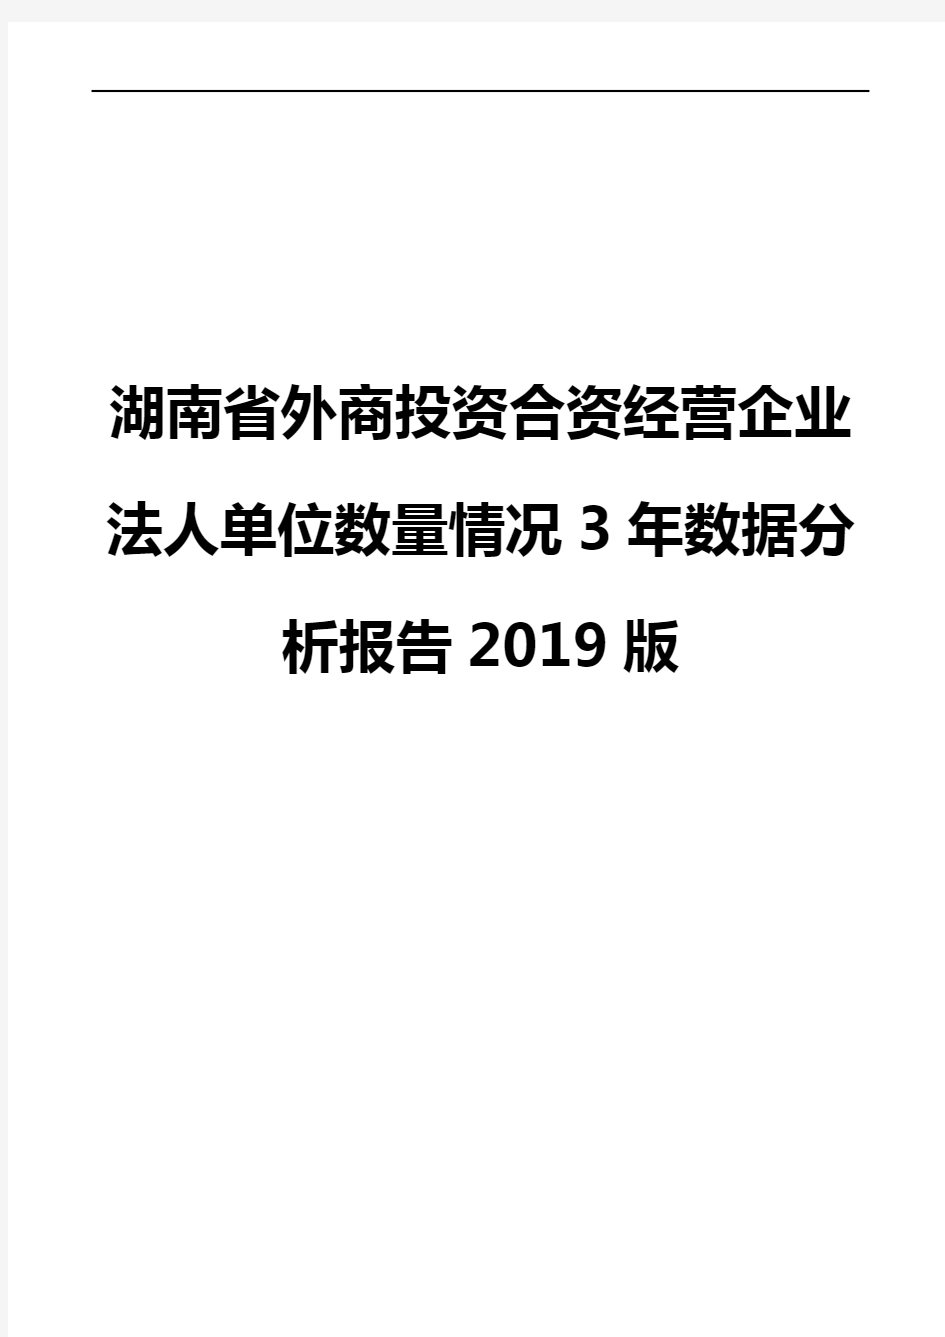 湖南省外商投资合资经营企业法人单位数量情况3年数据分析报告2019版